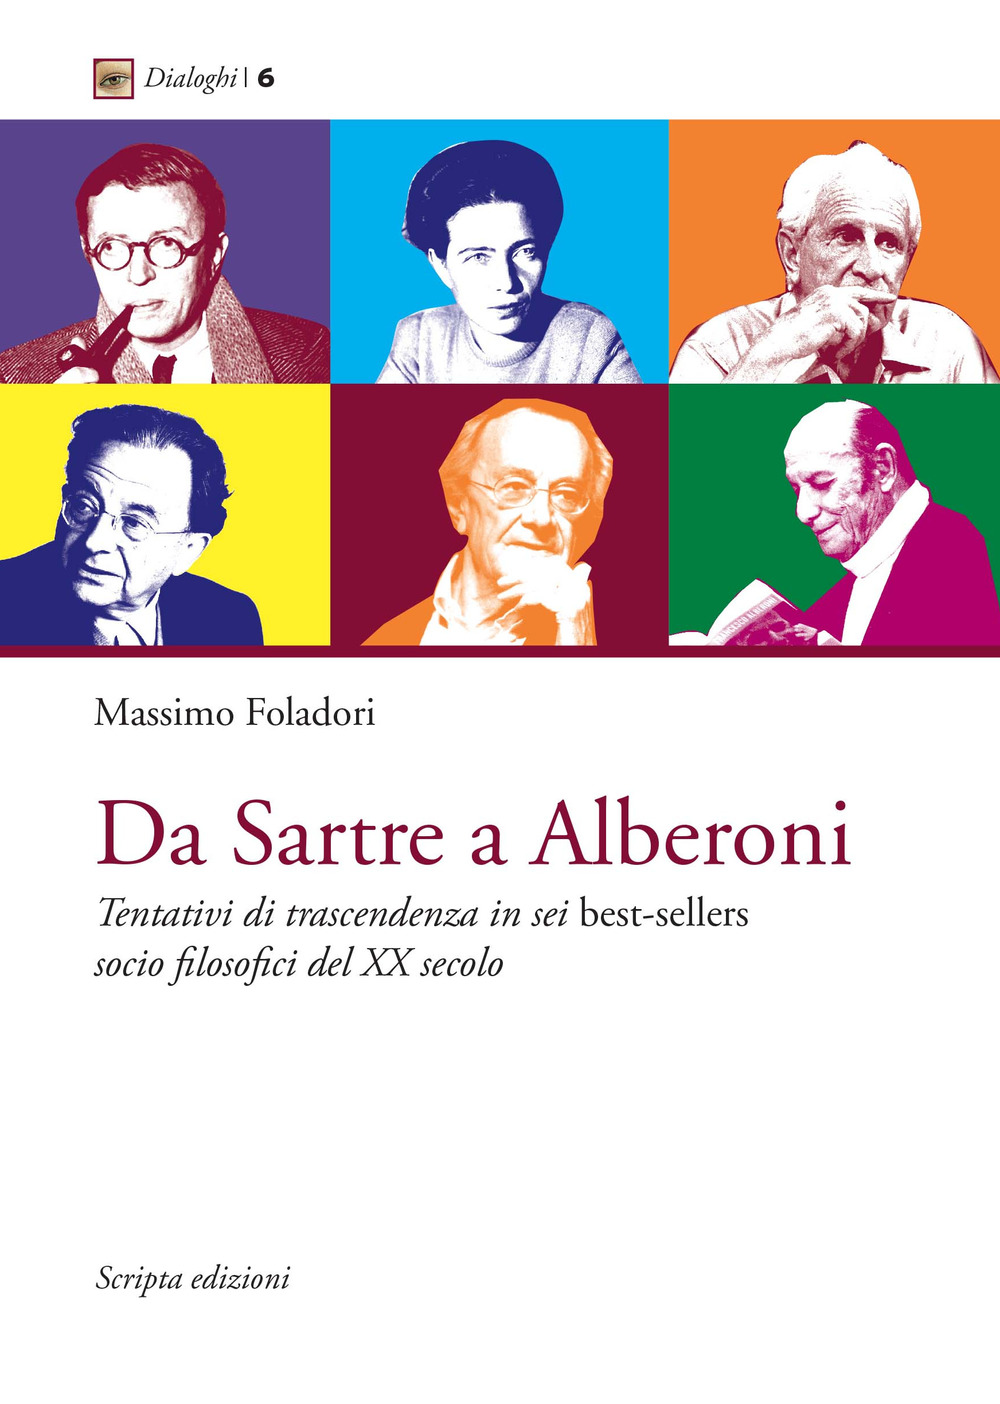 Da Sartre a Alberoni. Tentativi di trascendenza in sei best-sellers socio filosofici del XX secolo